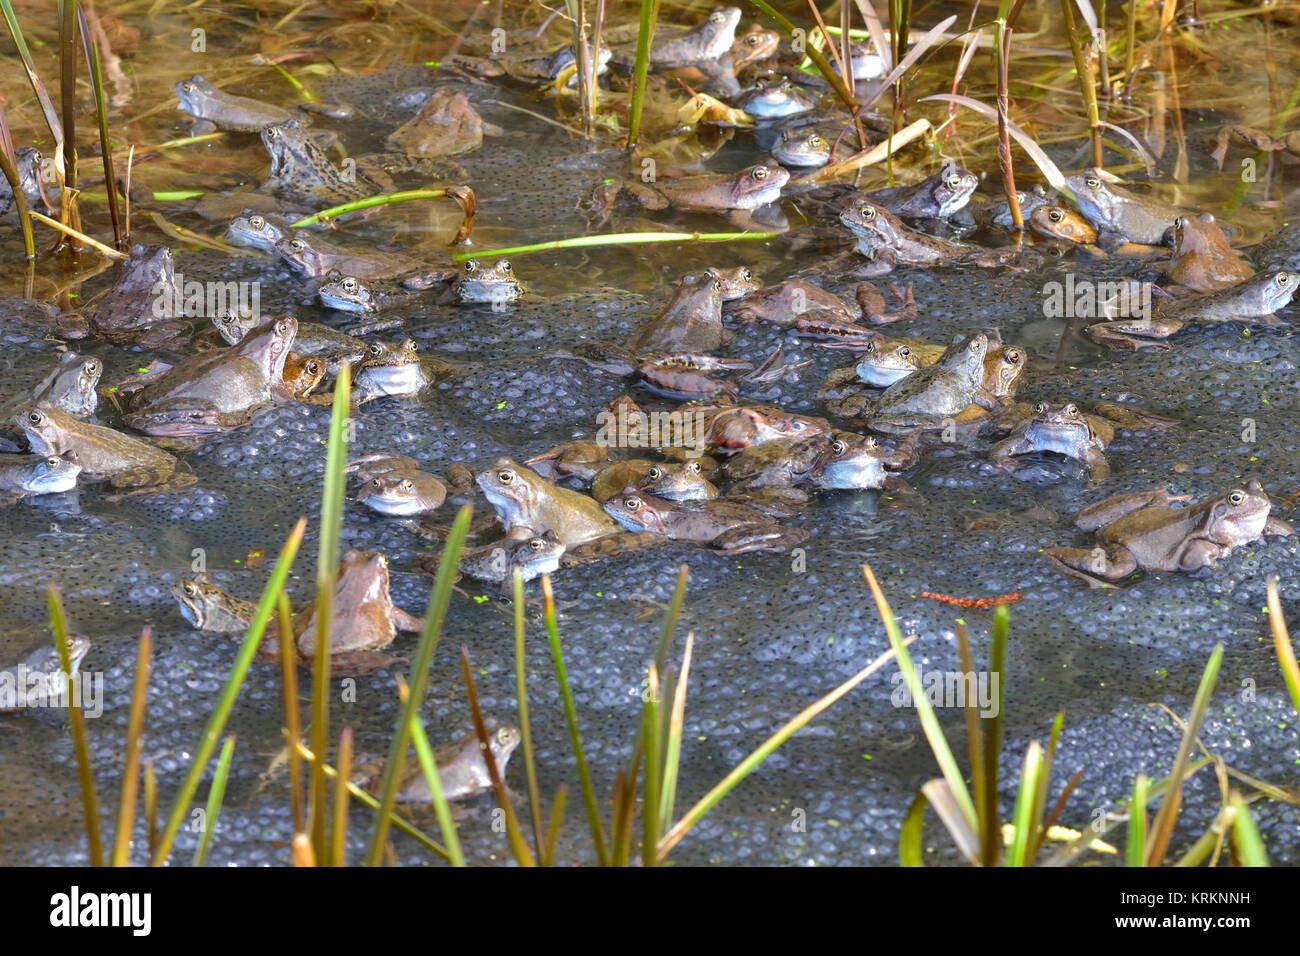 common frog Stock Photo